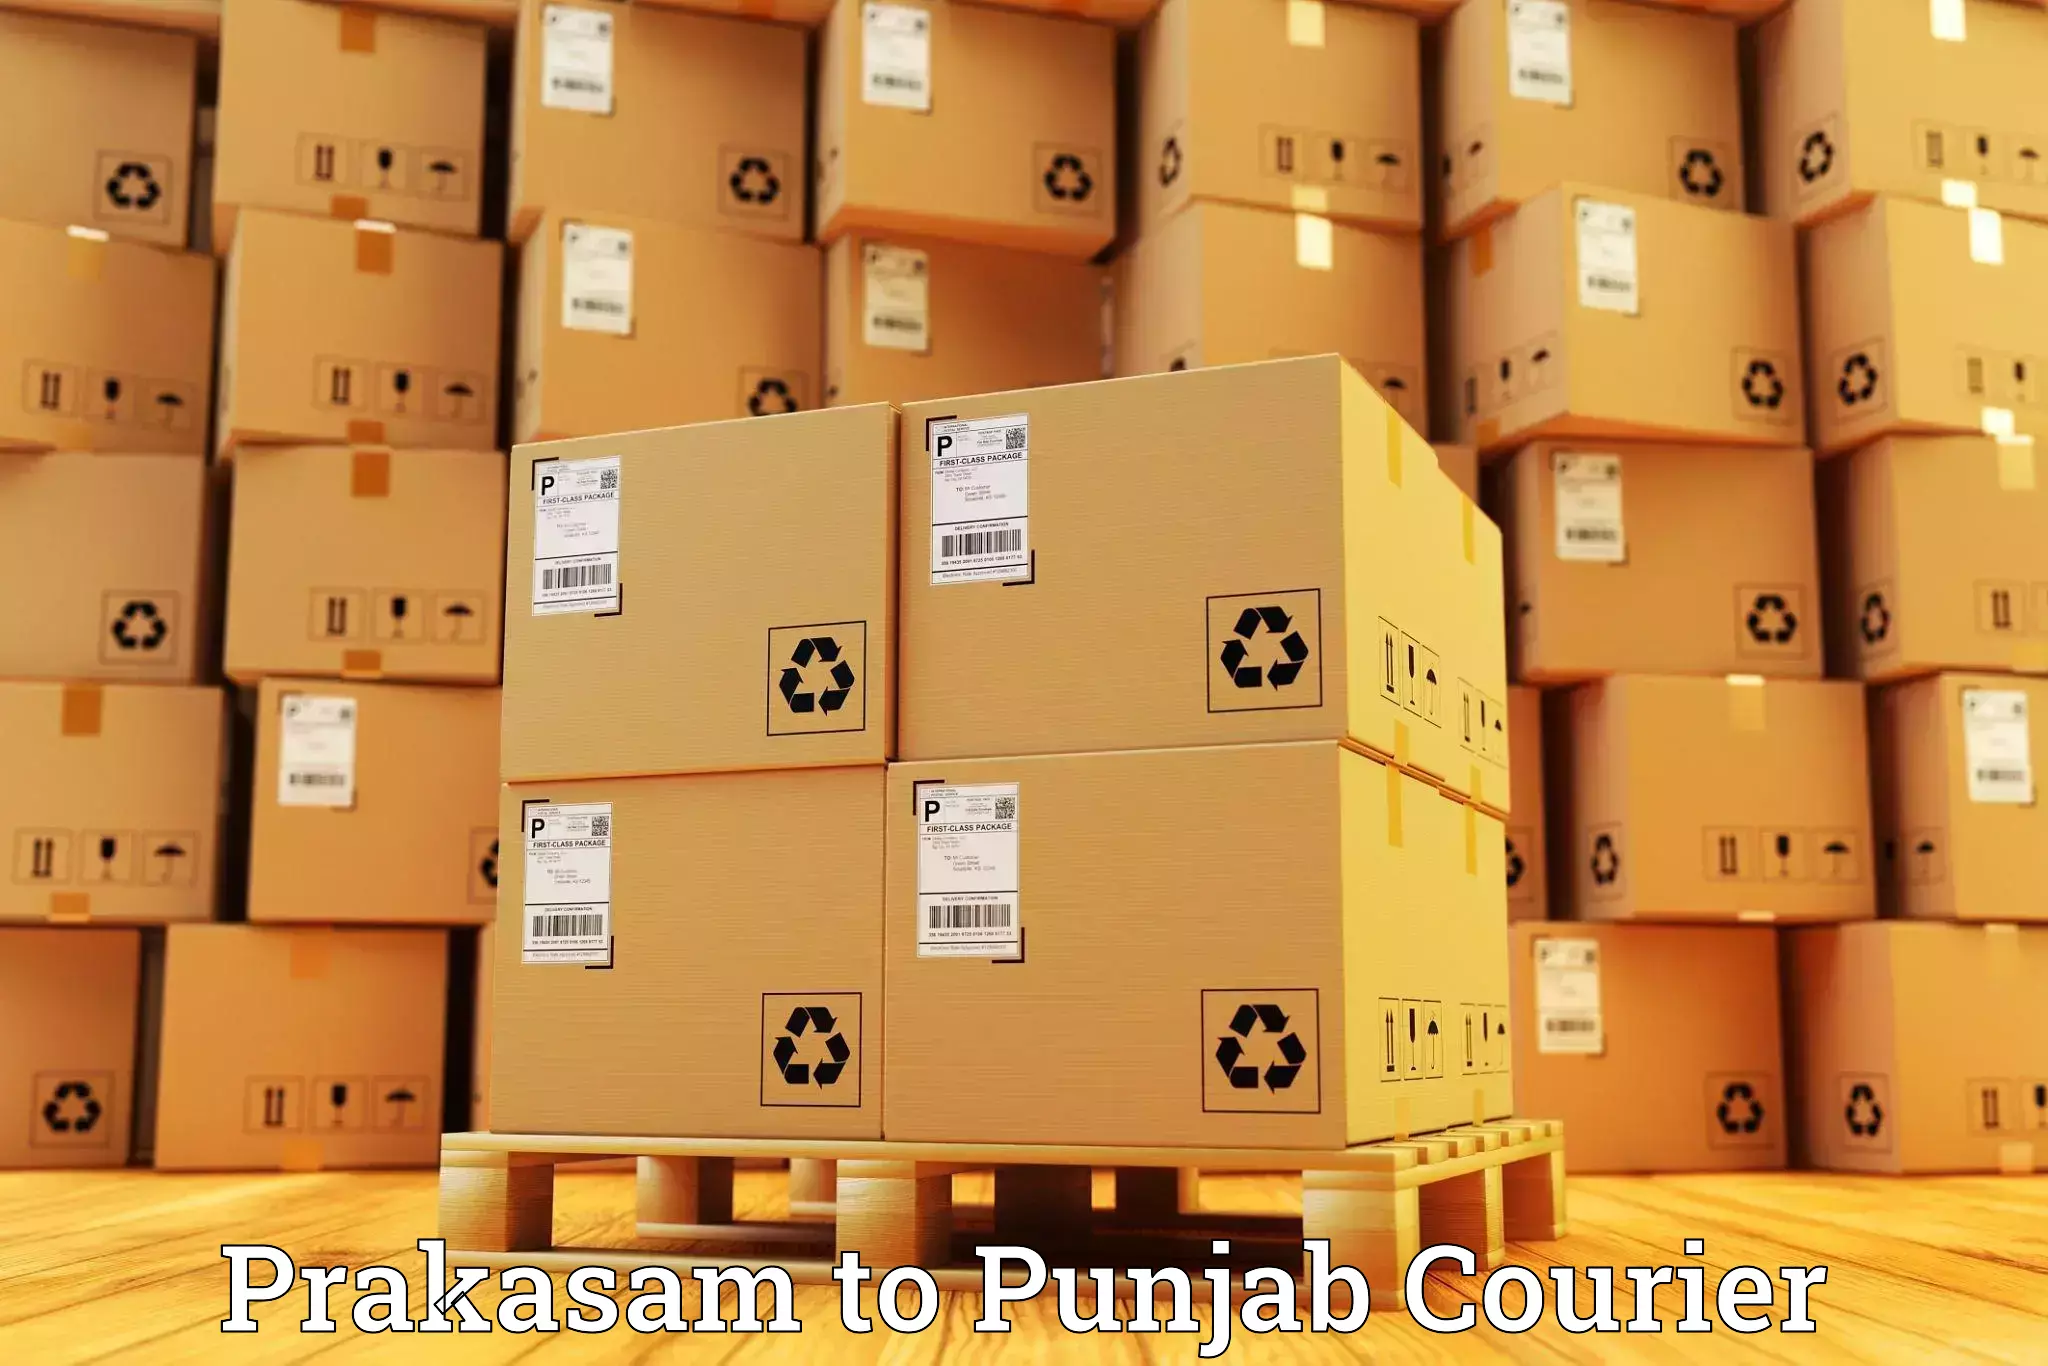 Baggage relocation service Prakasam to Punjab